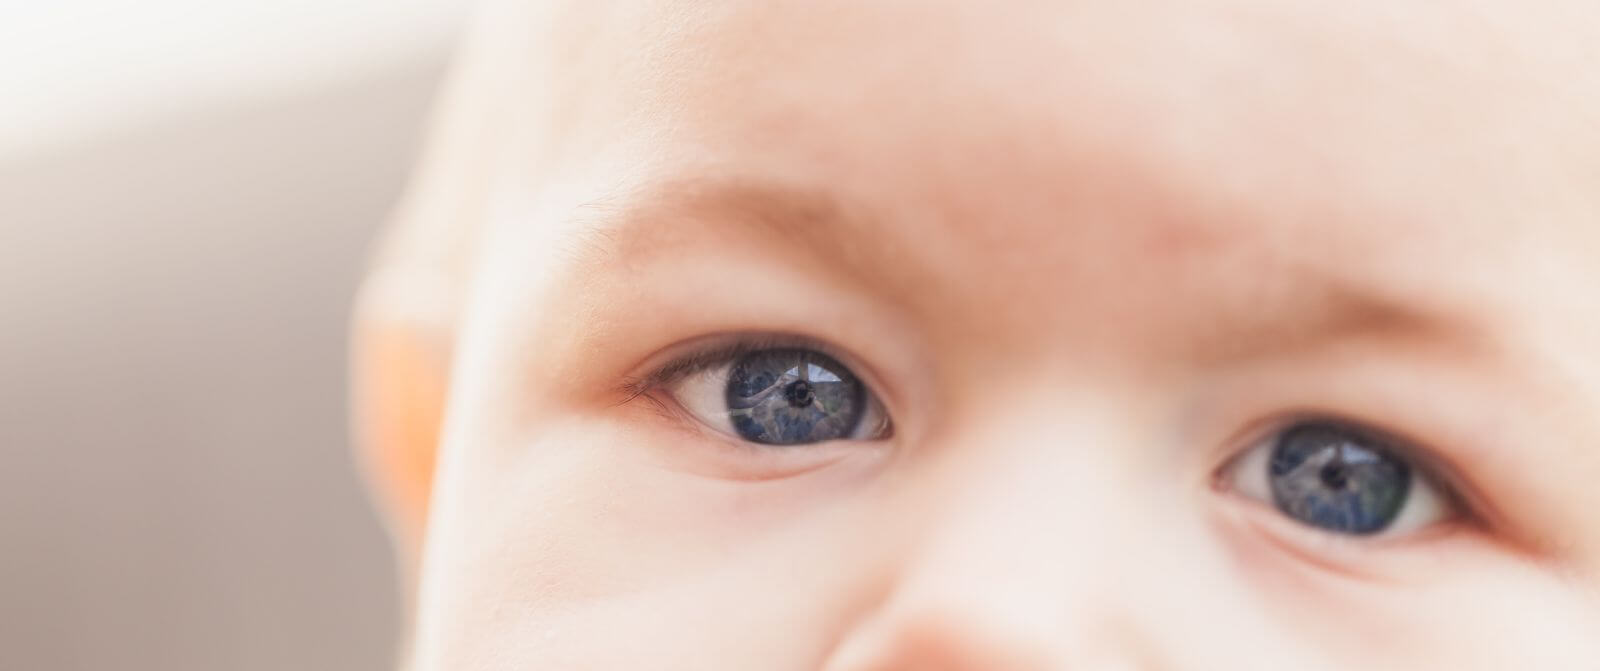 Kolor oczu dziecka